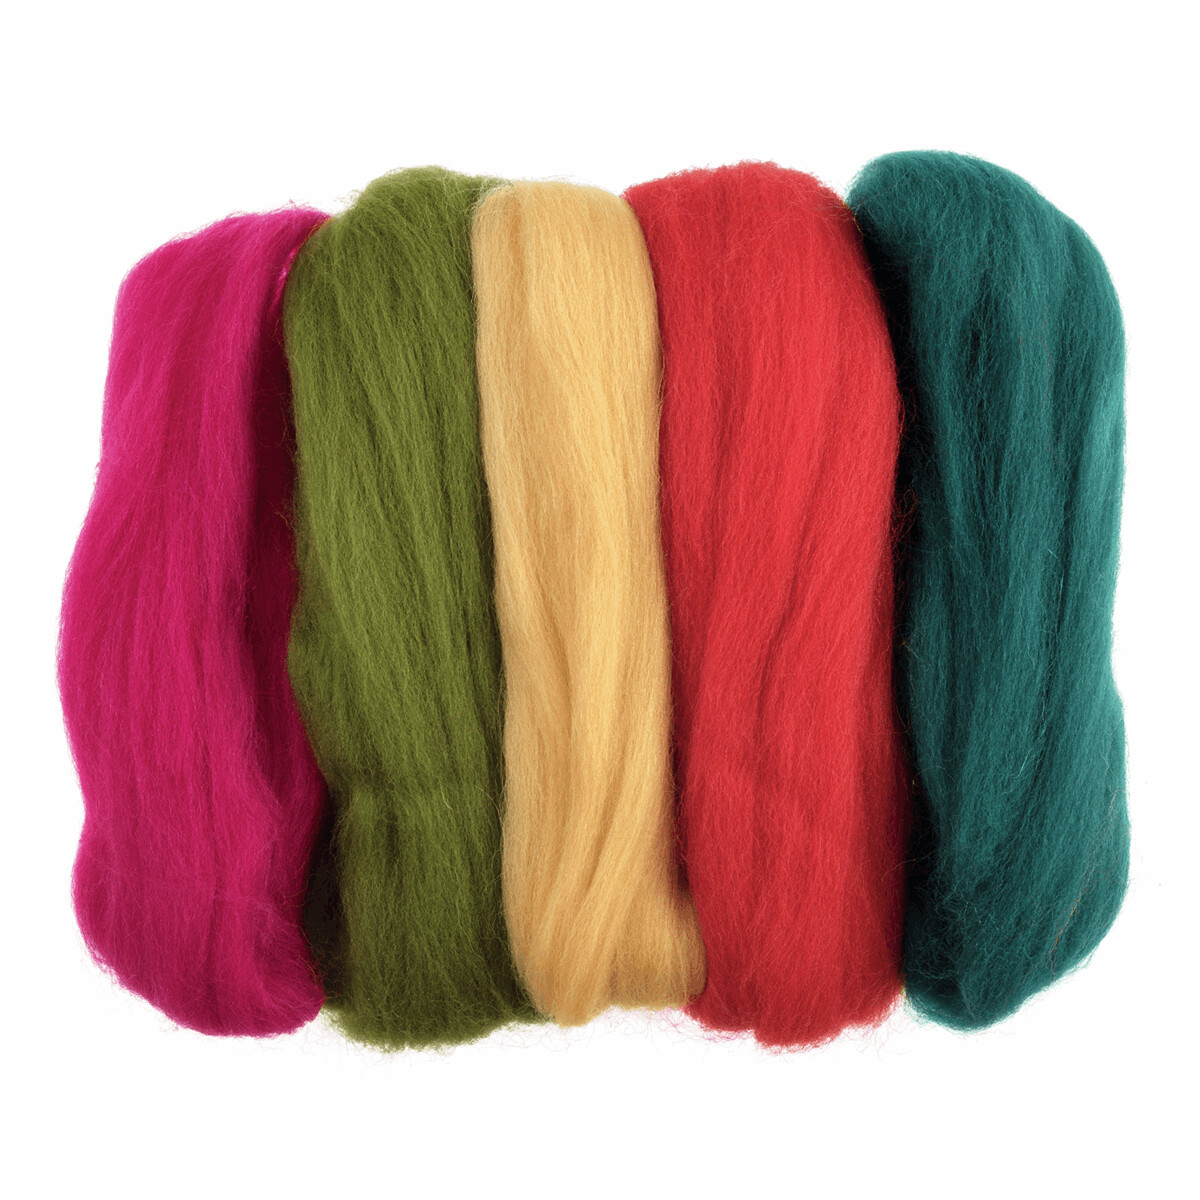 Natural Wool Roving - bright